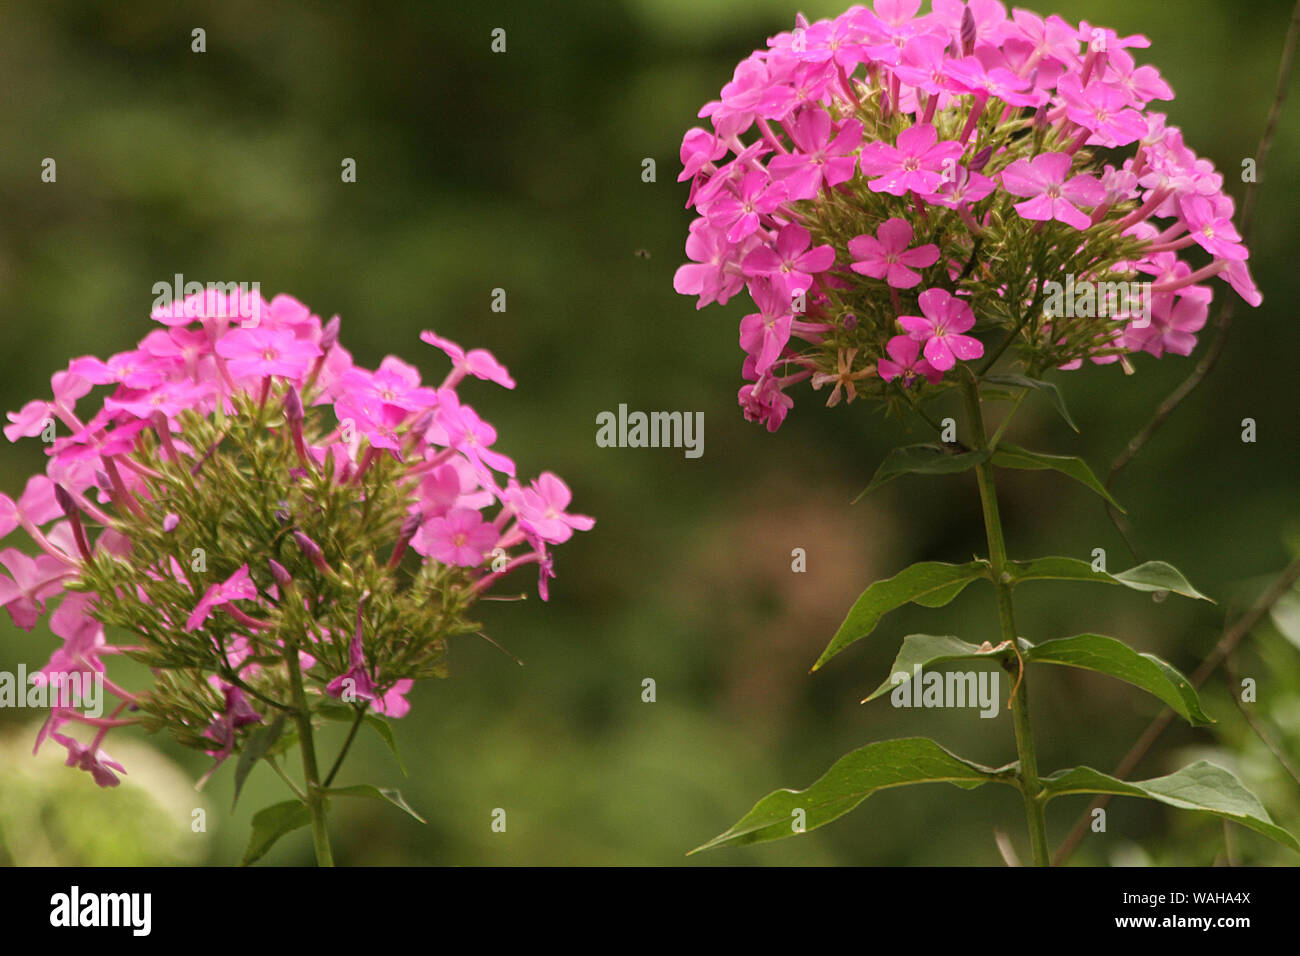 Pink Garden Phlox in bloom Stock Photo